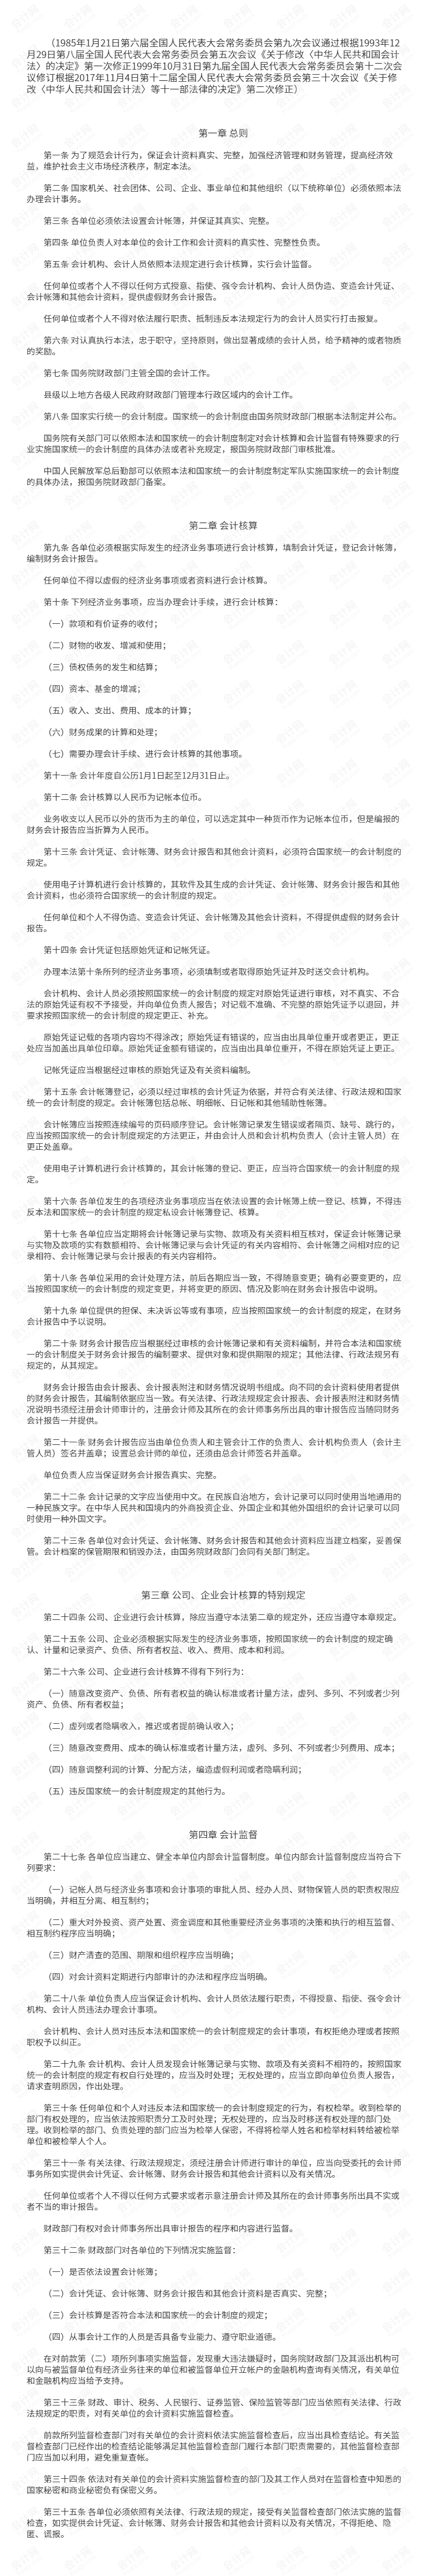 中华人民共和国会计法(2017修正) 上.png